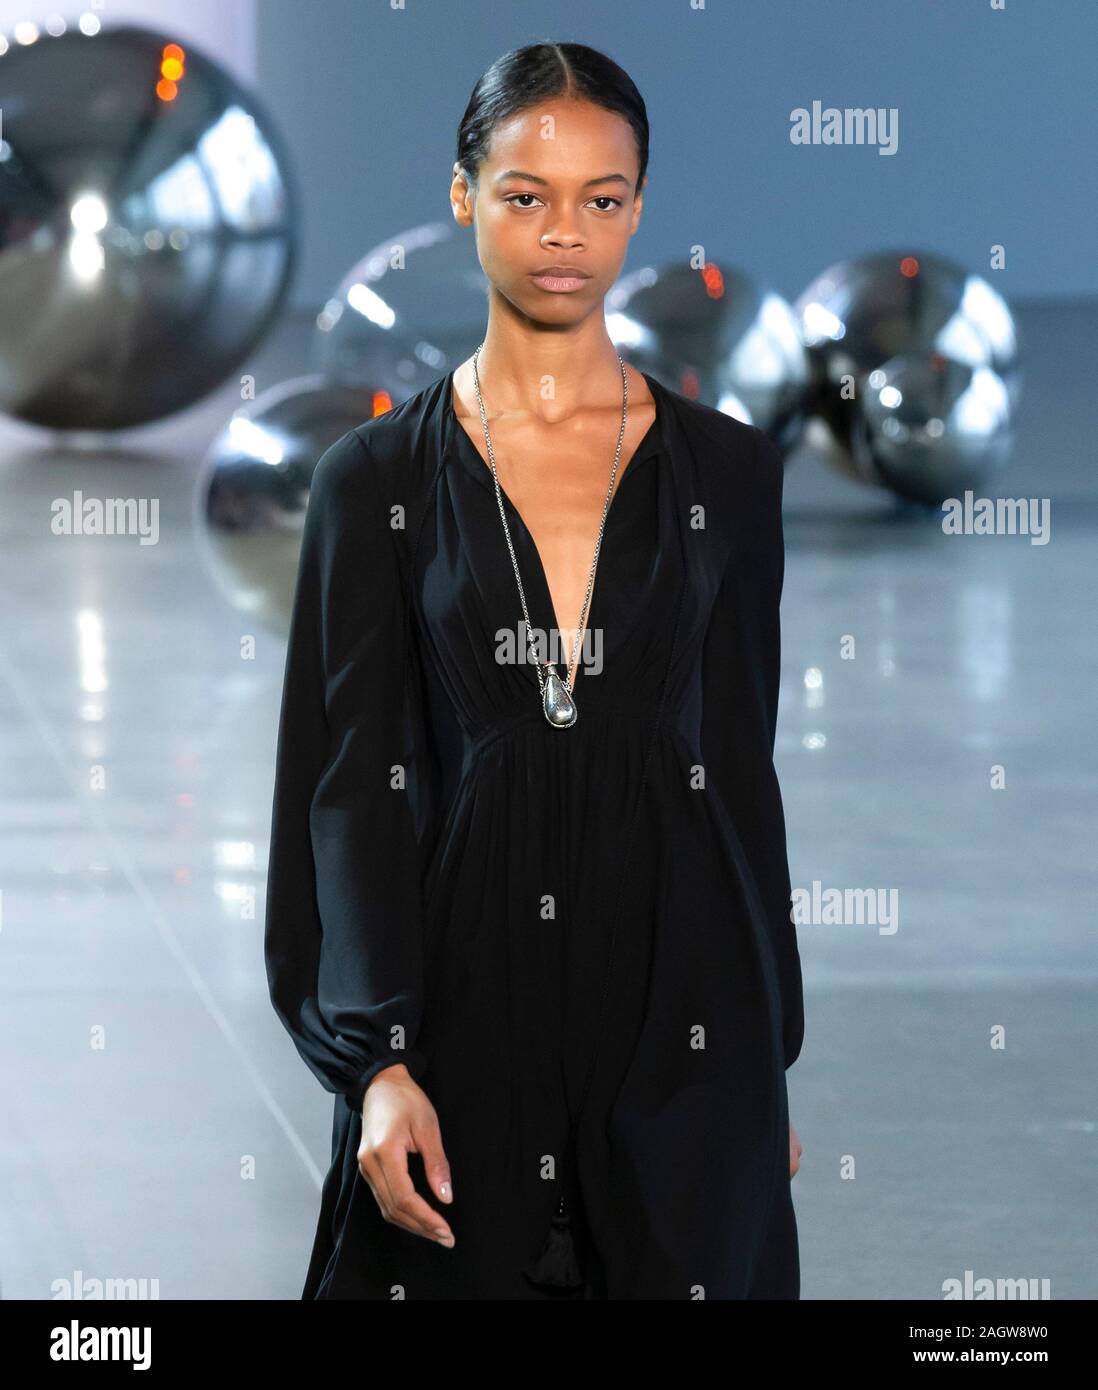 New York, NY - Sept 10, 2019: Aaliyah Hydes walks the runway at the ...